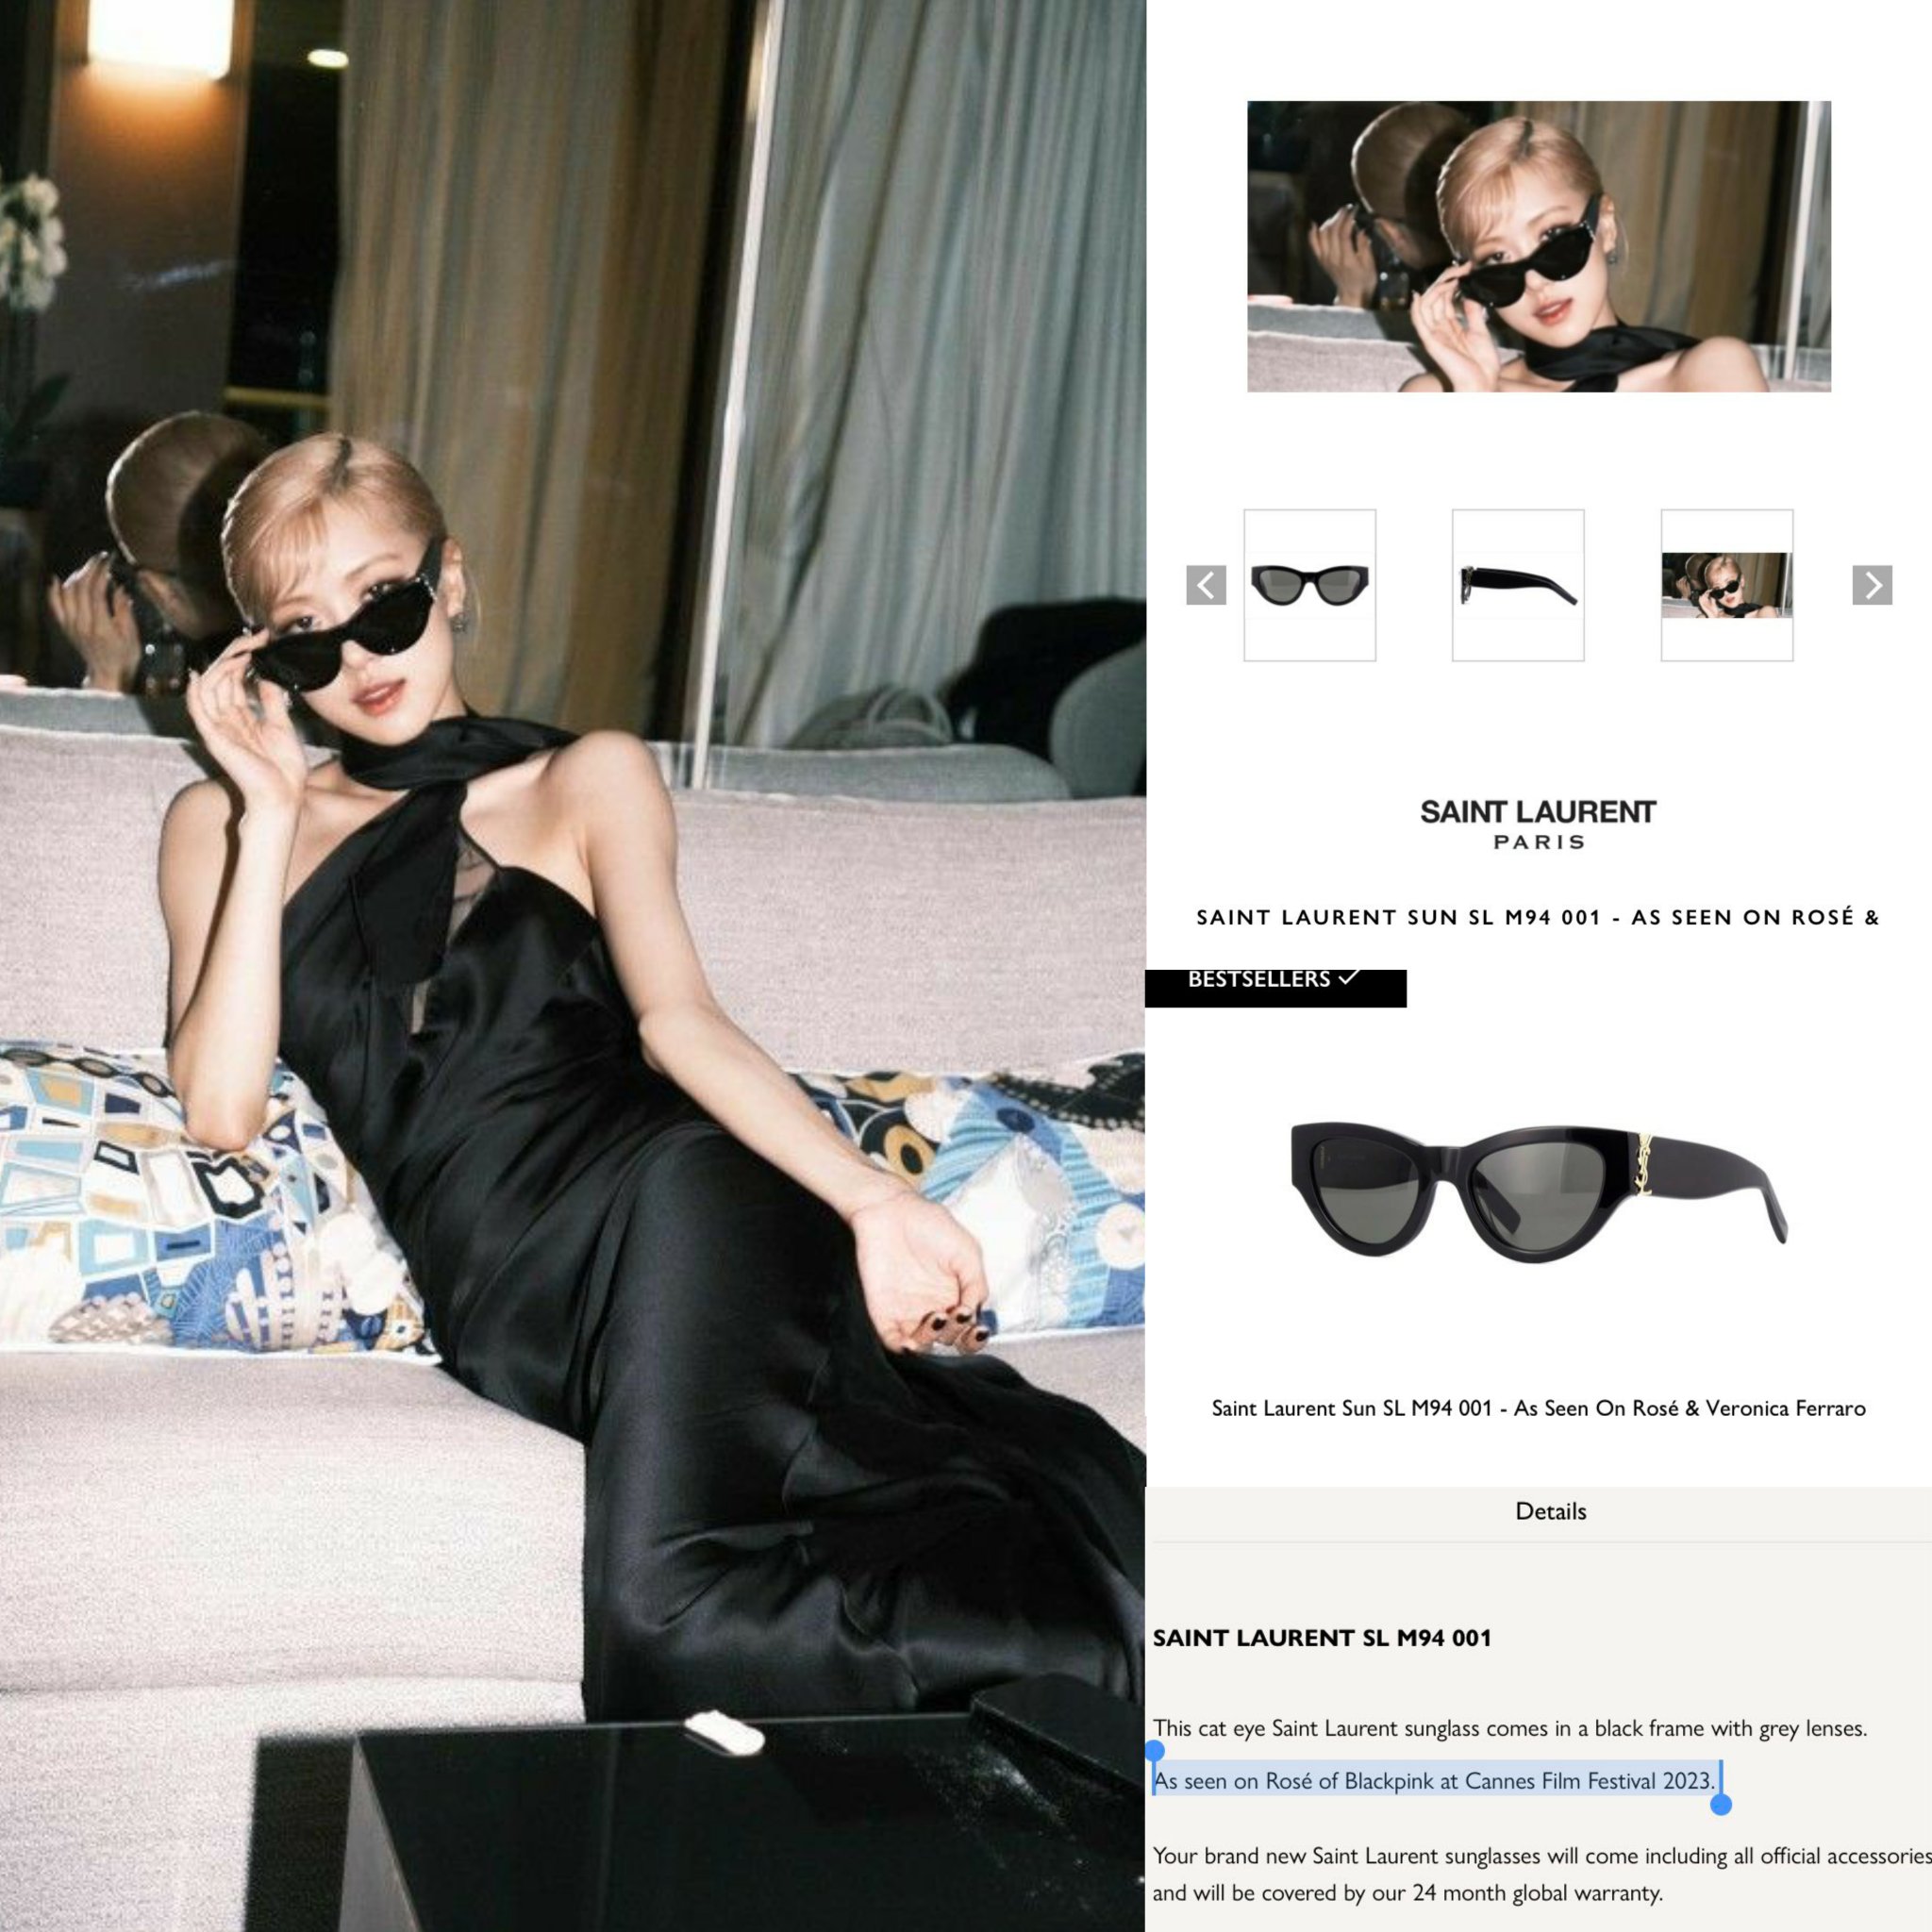 Saint Laurent SL M94 Cat Eye Sunglasses